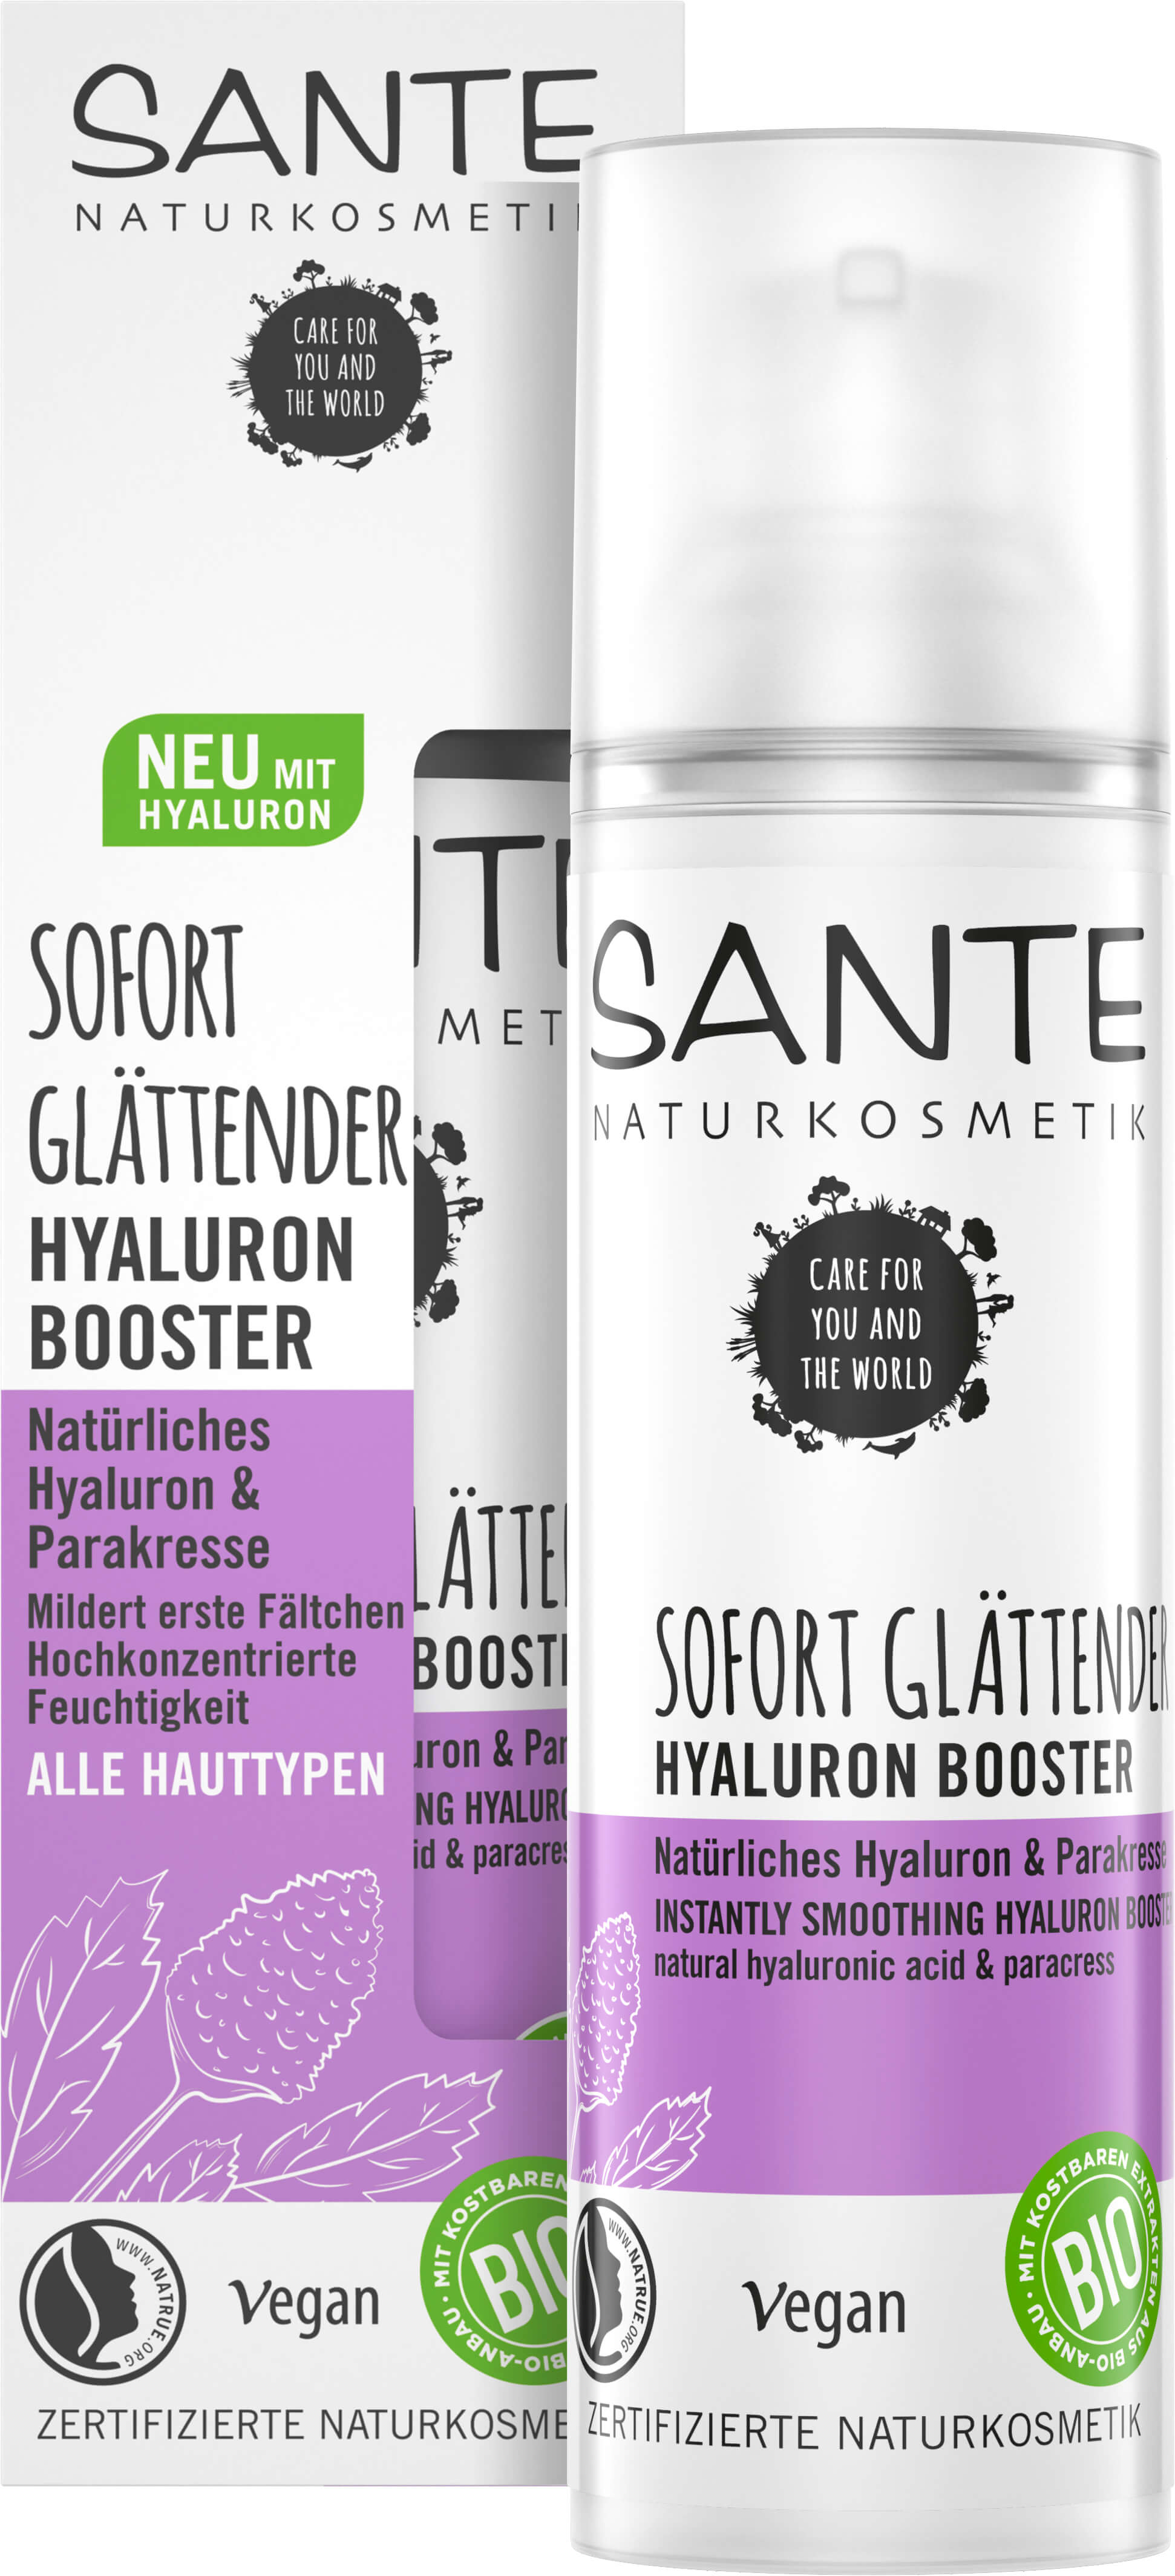 SANTE Naturkosmetik Booster & Sofort | Hyaluron Parakresse Natürliches Hyaluron Glättender